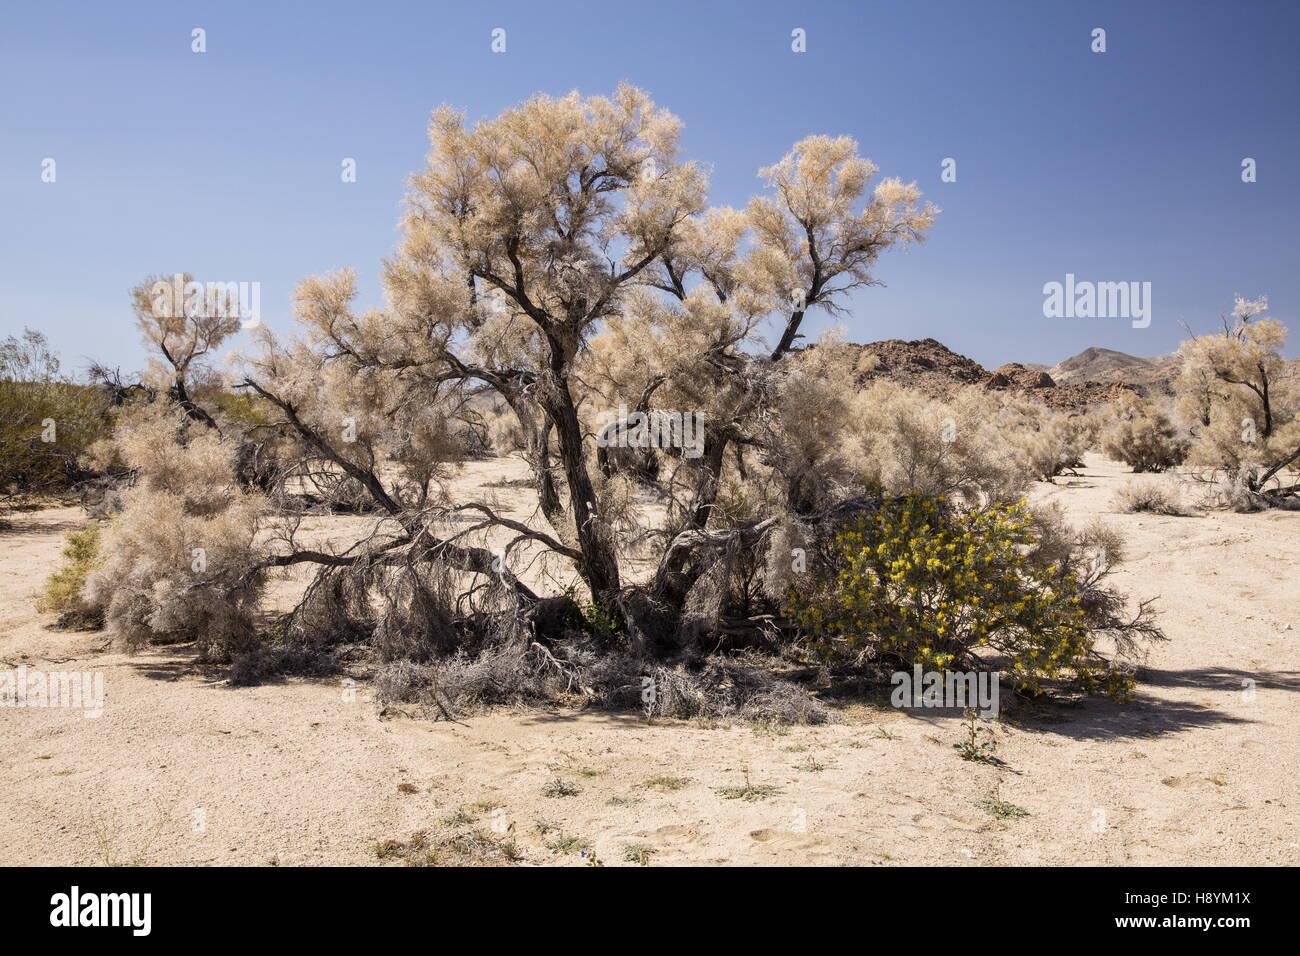 Arbre de fumée, Psorothamnus spinosus, dans le sud du désert de gravier, lavage de désert californien. Banque D'Images